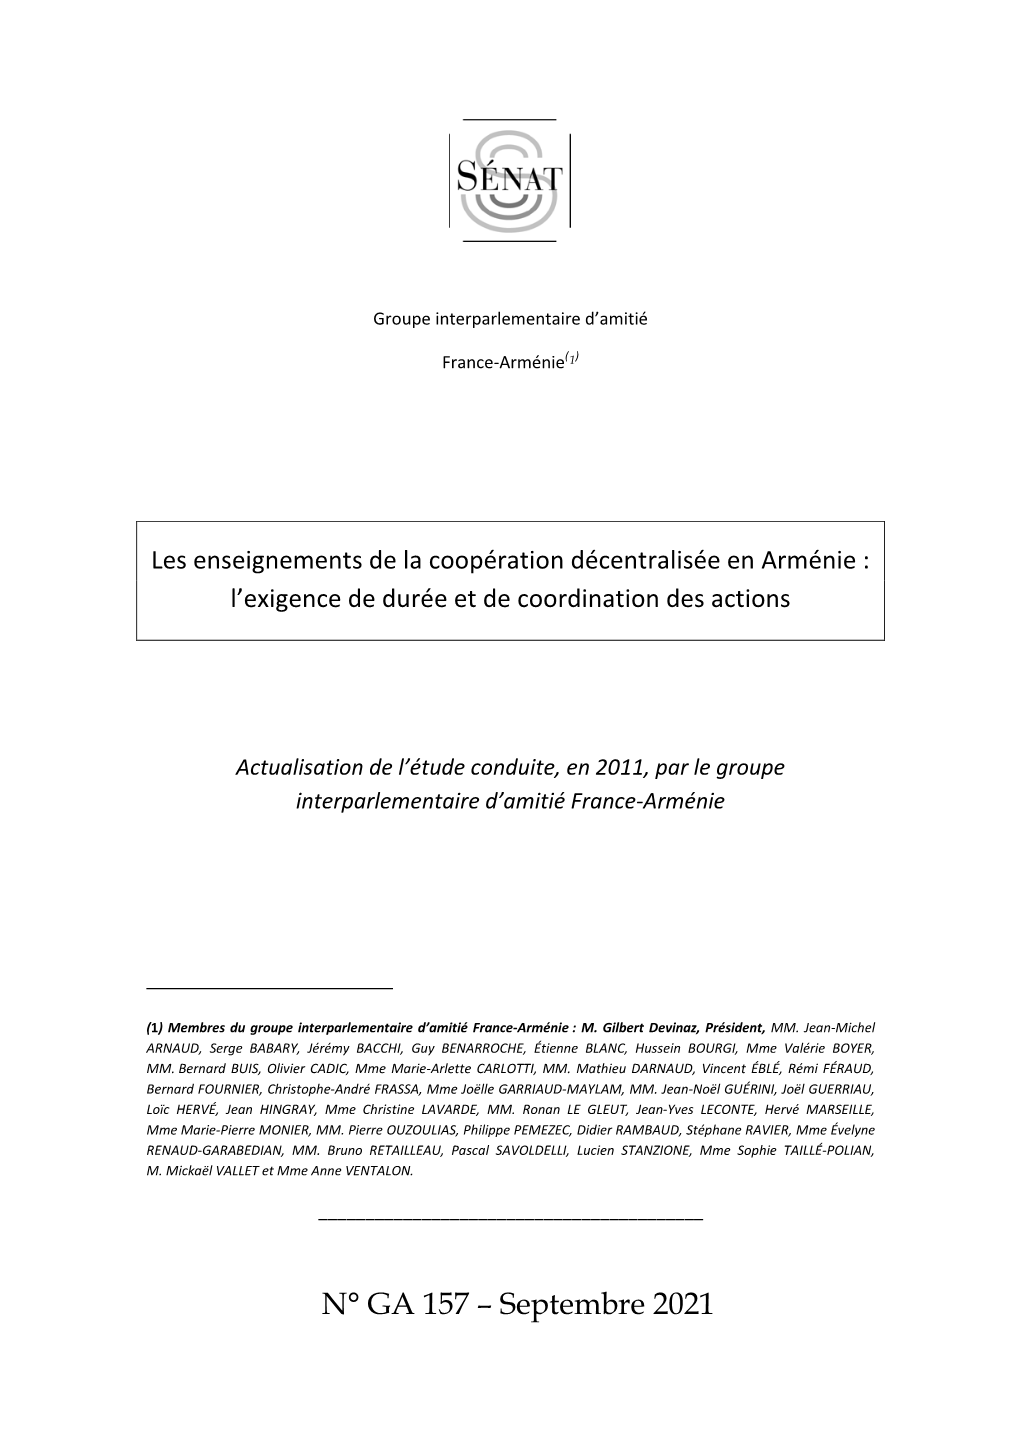 Les Enseignements De La Coopération Décentralisée En Arménie : L’Exigence De Durée Et De Coordination Des Actions